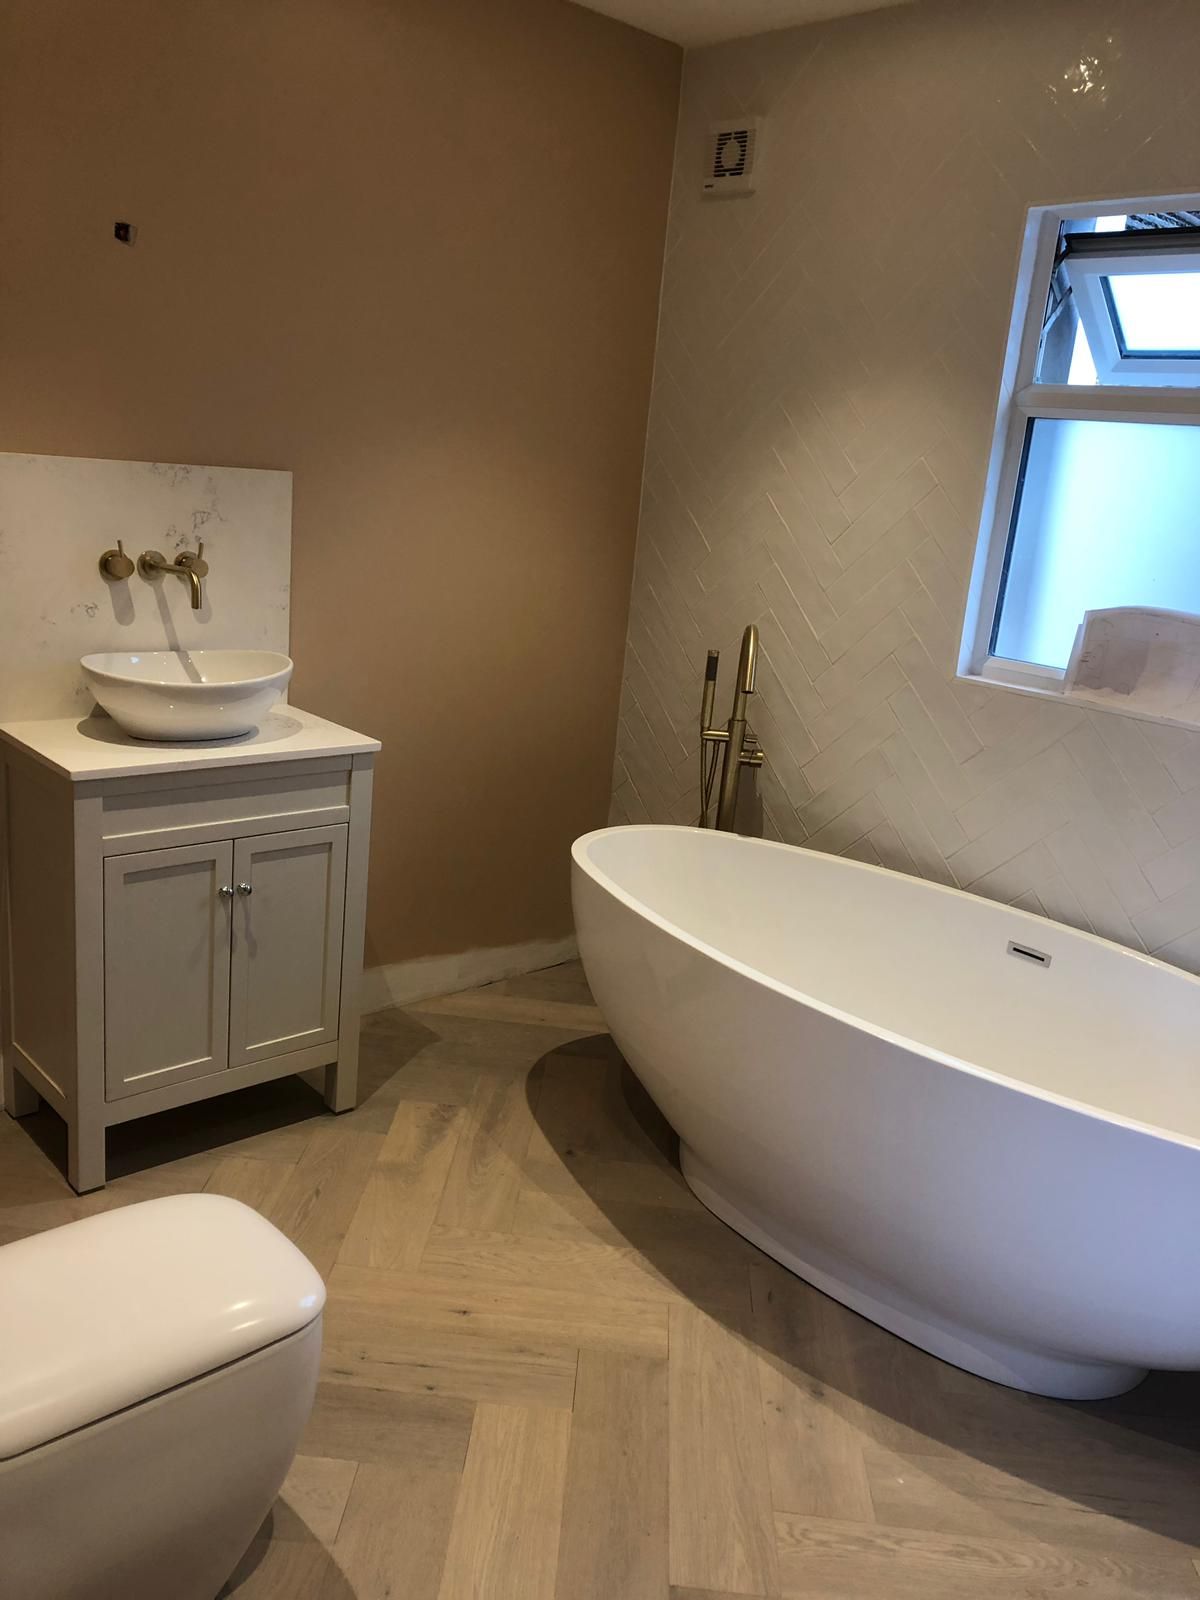 Bathroom plumbing installation Watford